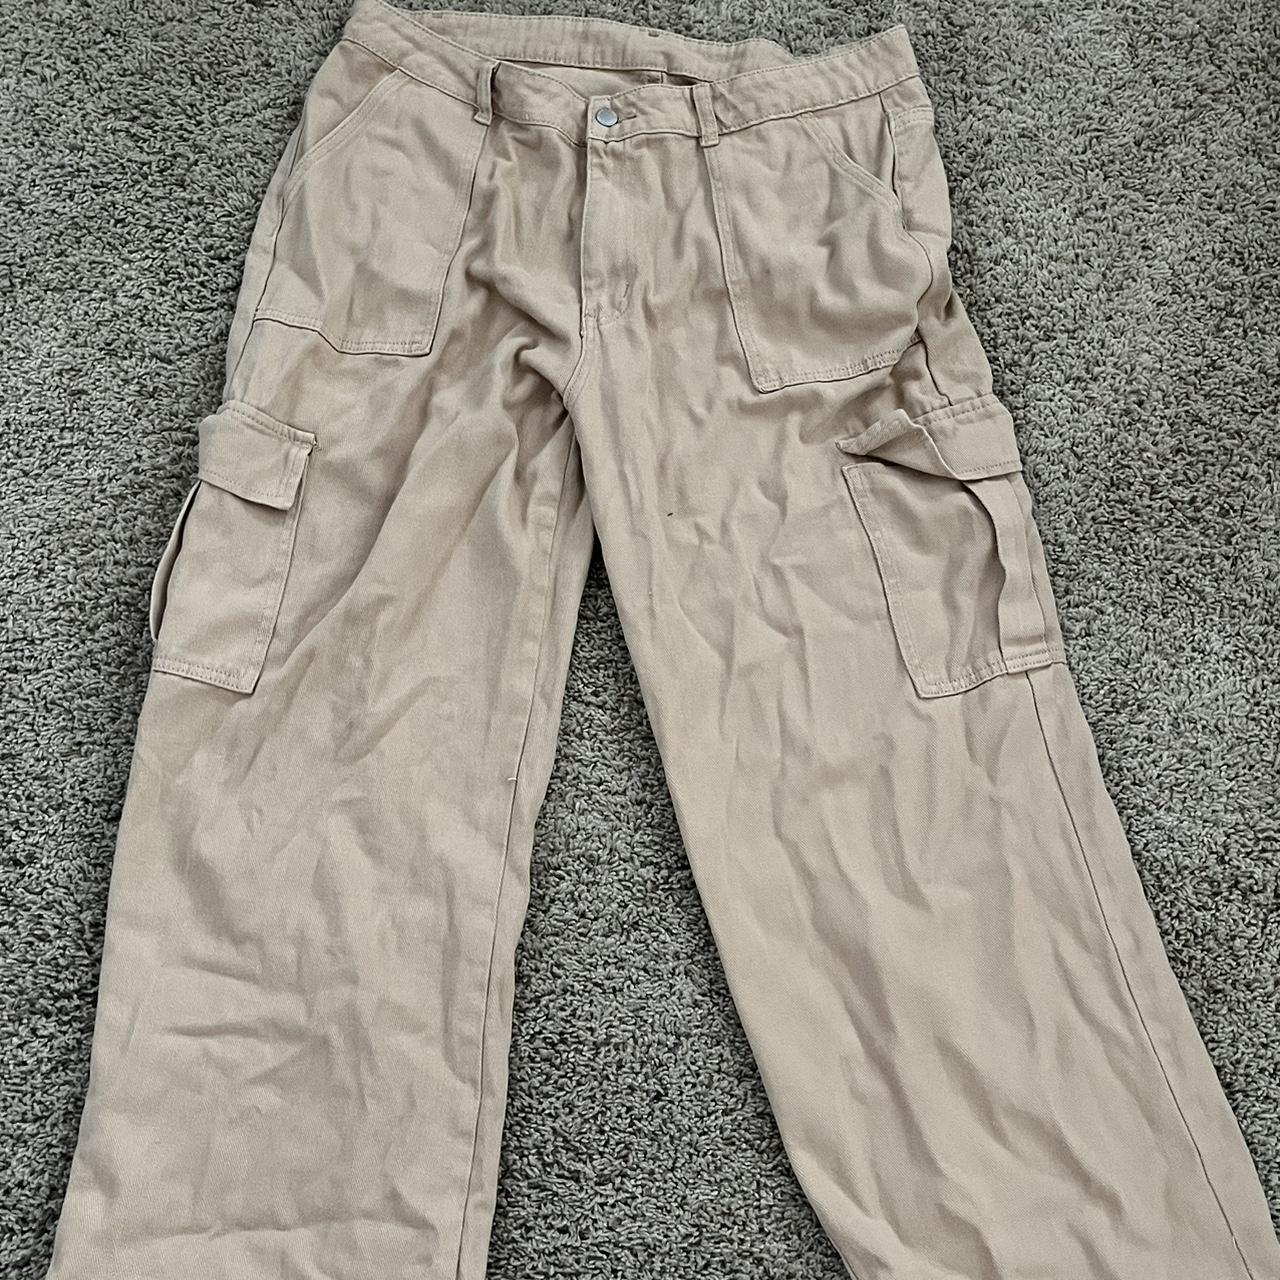 SheIn Cargo pants size 12 Price: 1200 | Instagram